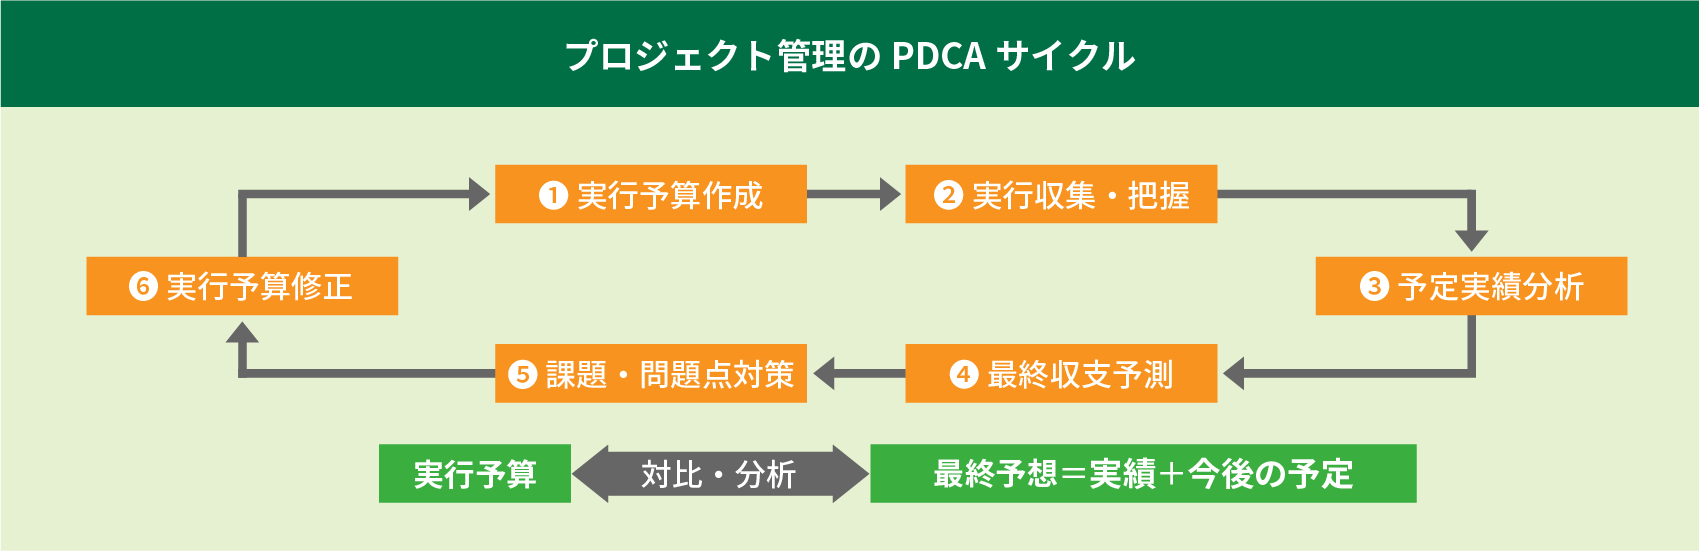 プロジェクト管理のPDCAサイクル